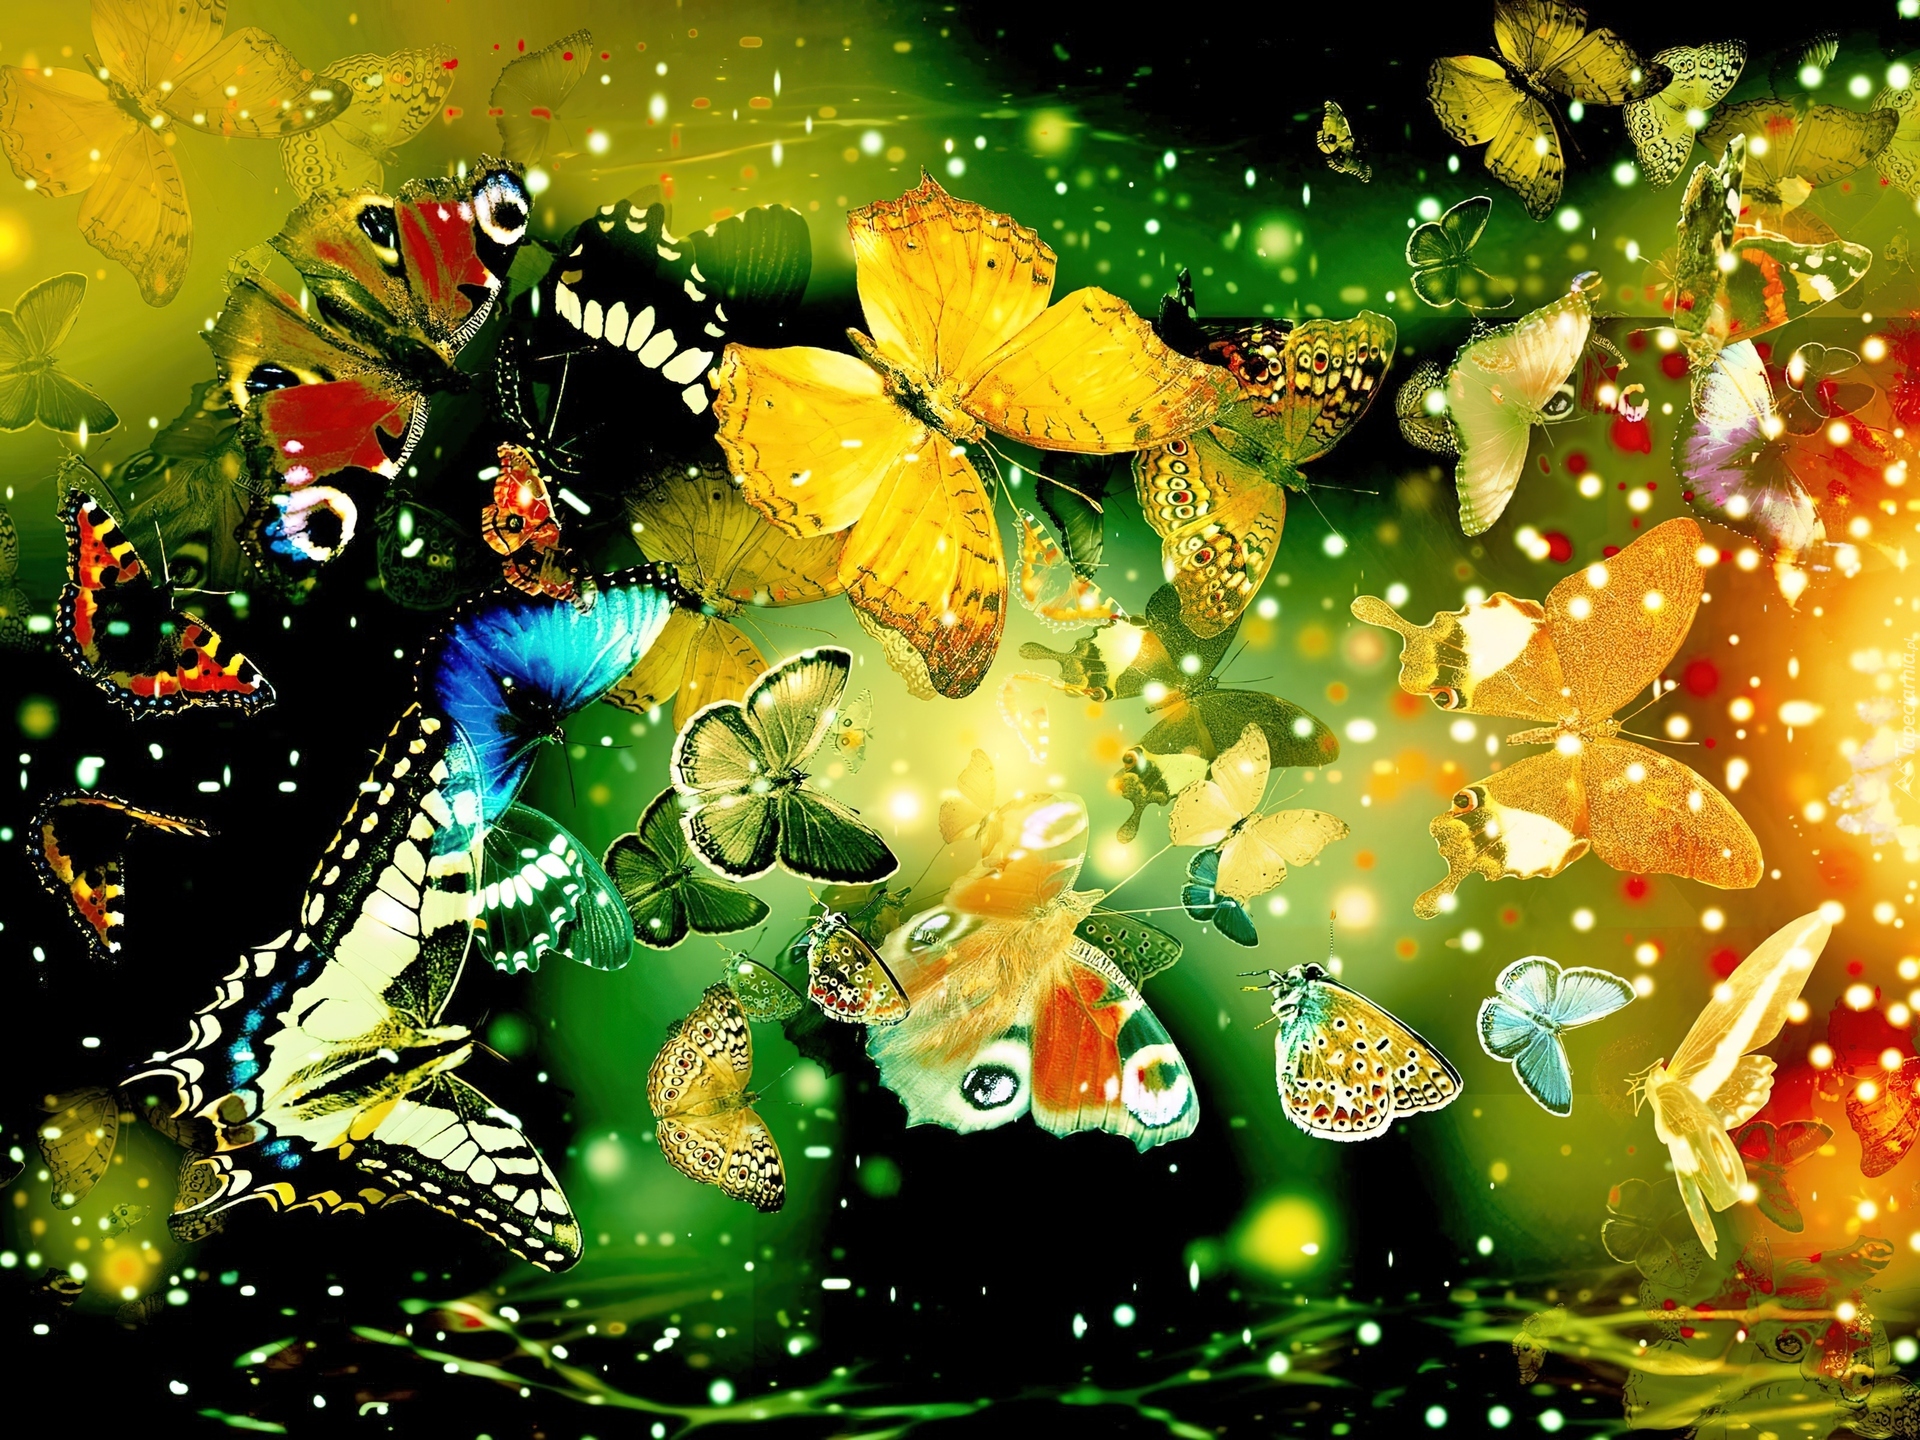 Картинки на телефон на заставку красивые живые. Картины бабочек красивых. Яркие картинки на рабочий стол. Картинки на рабочий стол бабочки. Много бабочек.